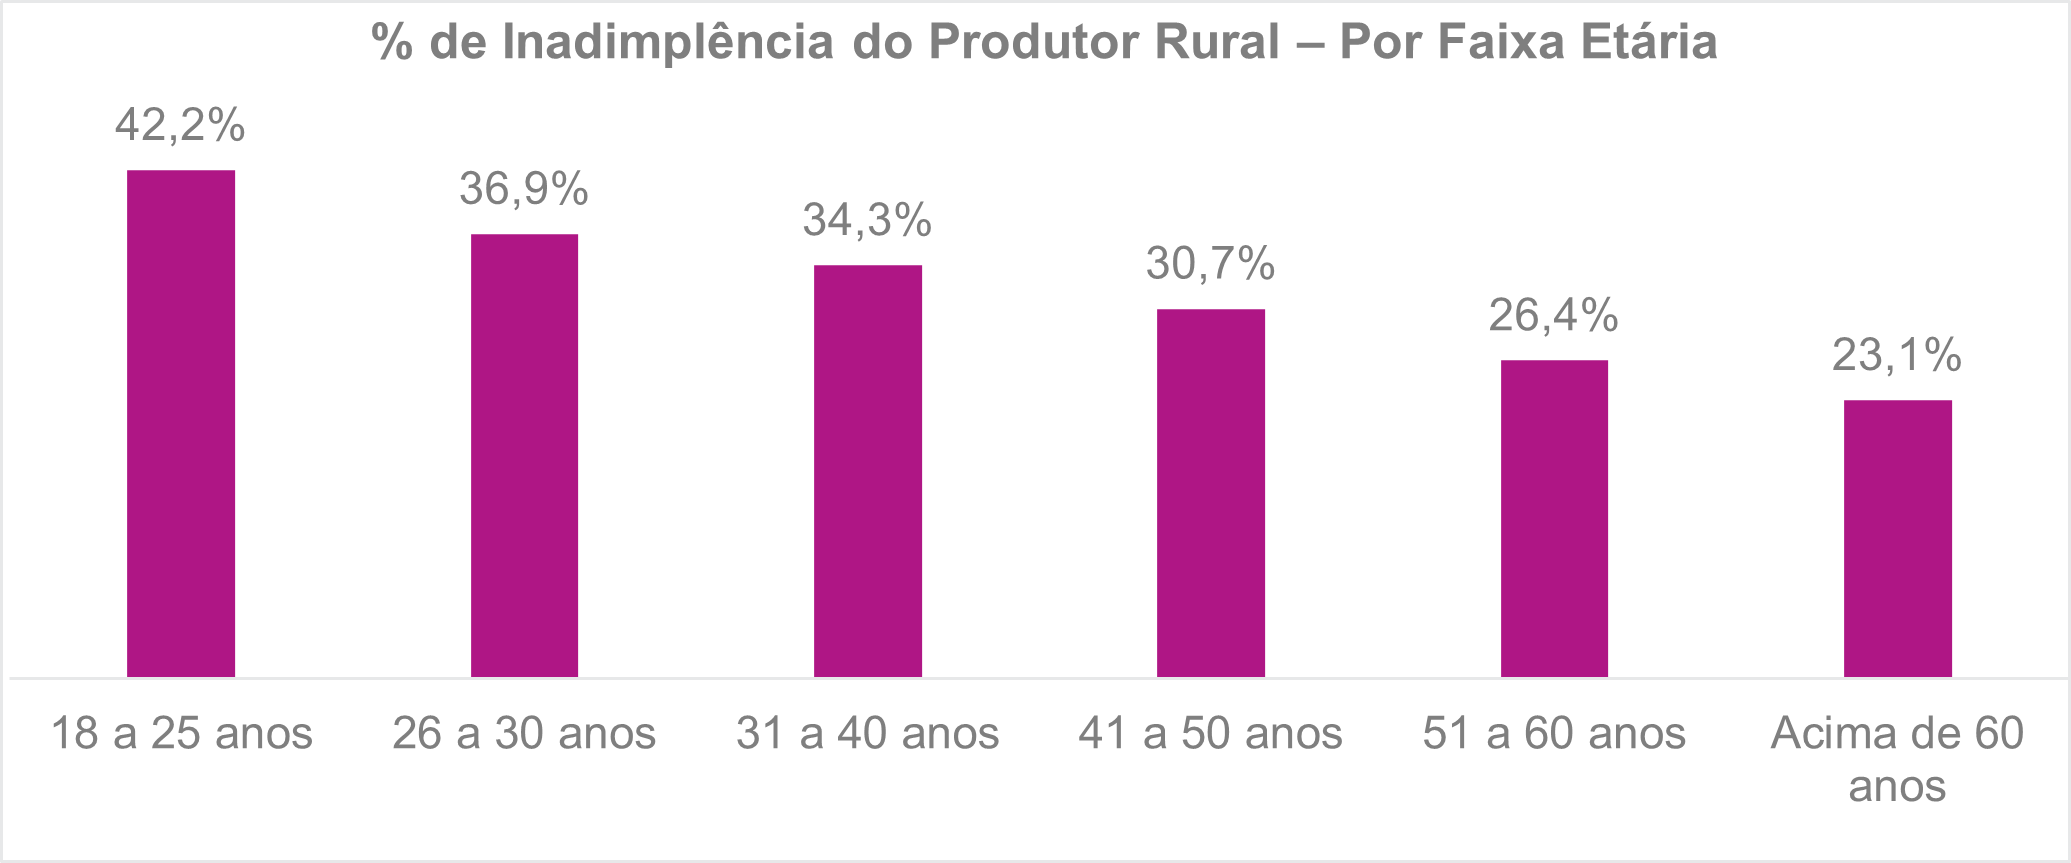 Inadimplência do produtor rural por faixa etária